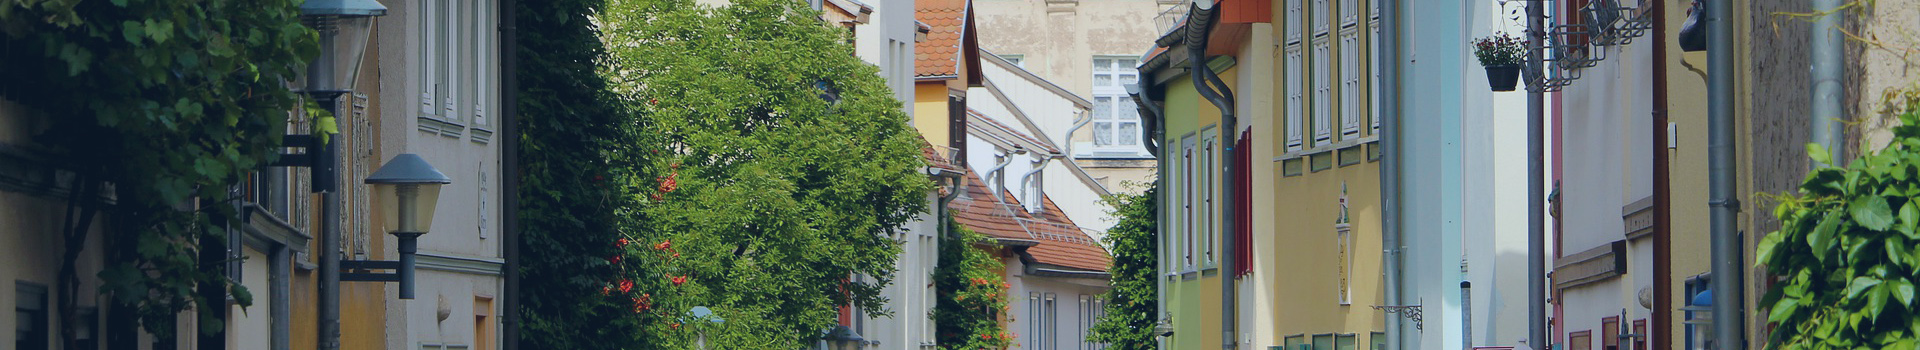 Tyroller Immobilien und Hausverwaltung in Erfurt Thüringen